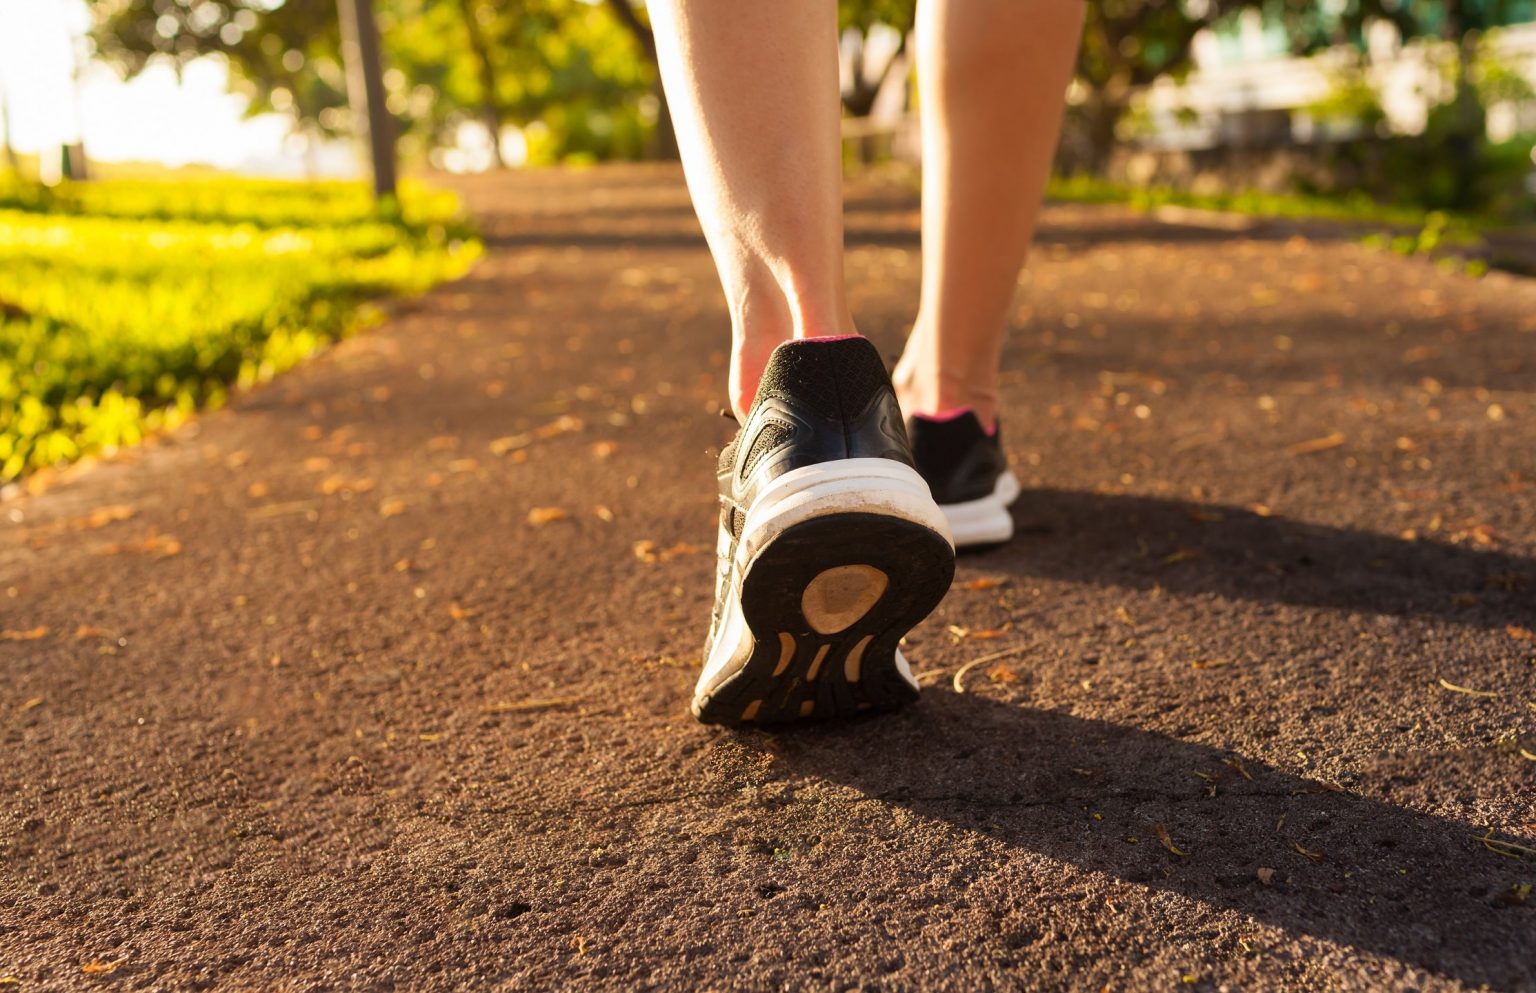 Caminhar emagrece mais do que ir à academia, mas só se 3 regras forem seguidas, afirma especialista